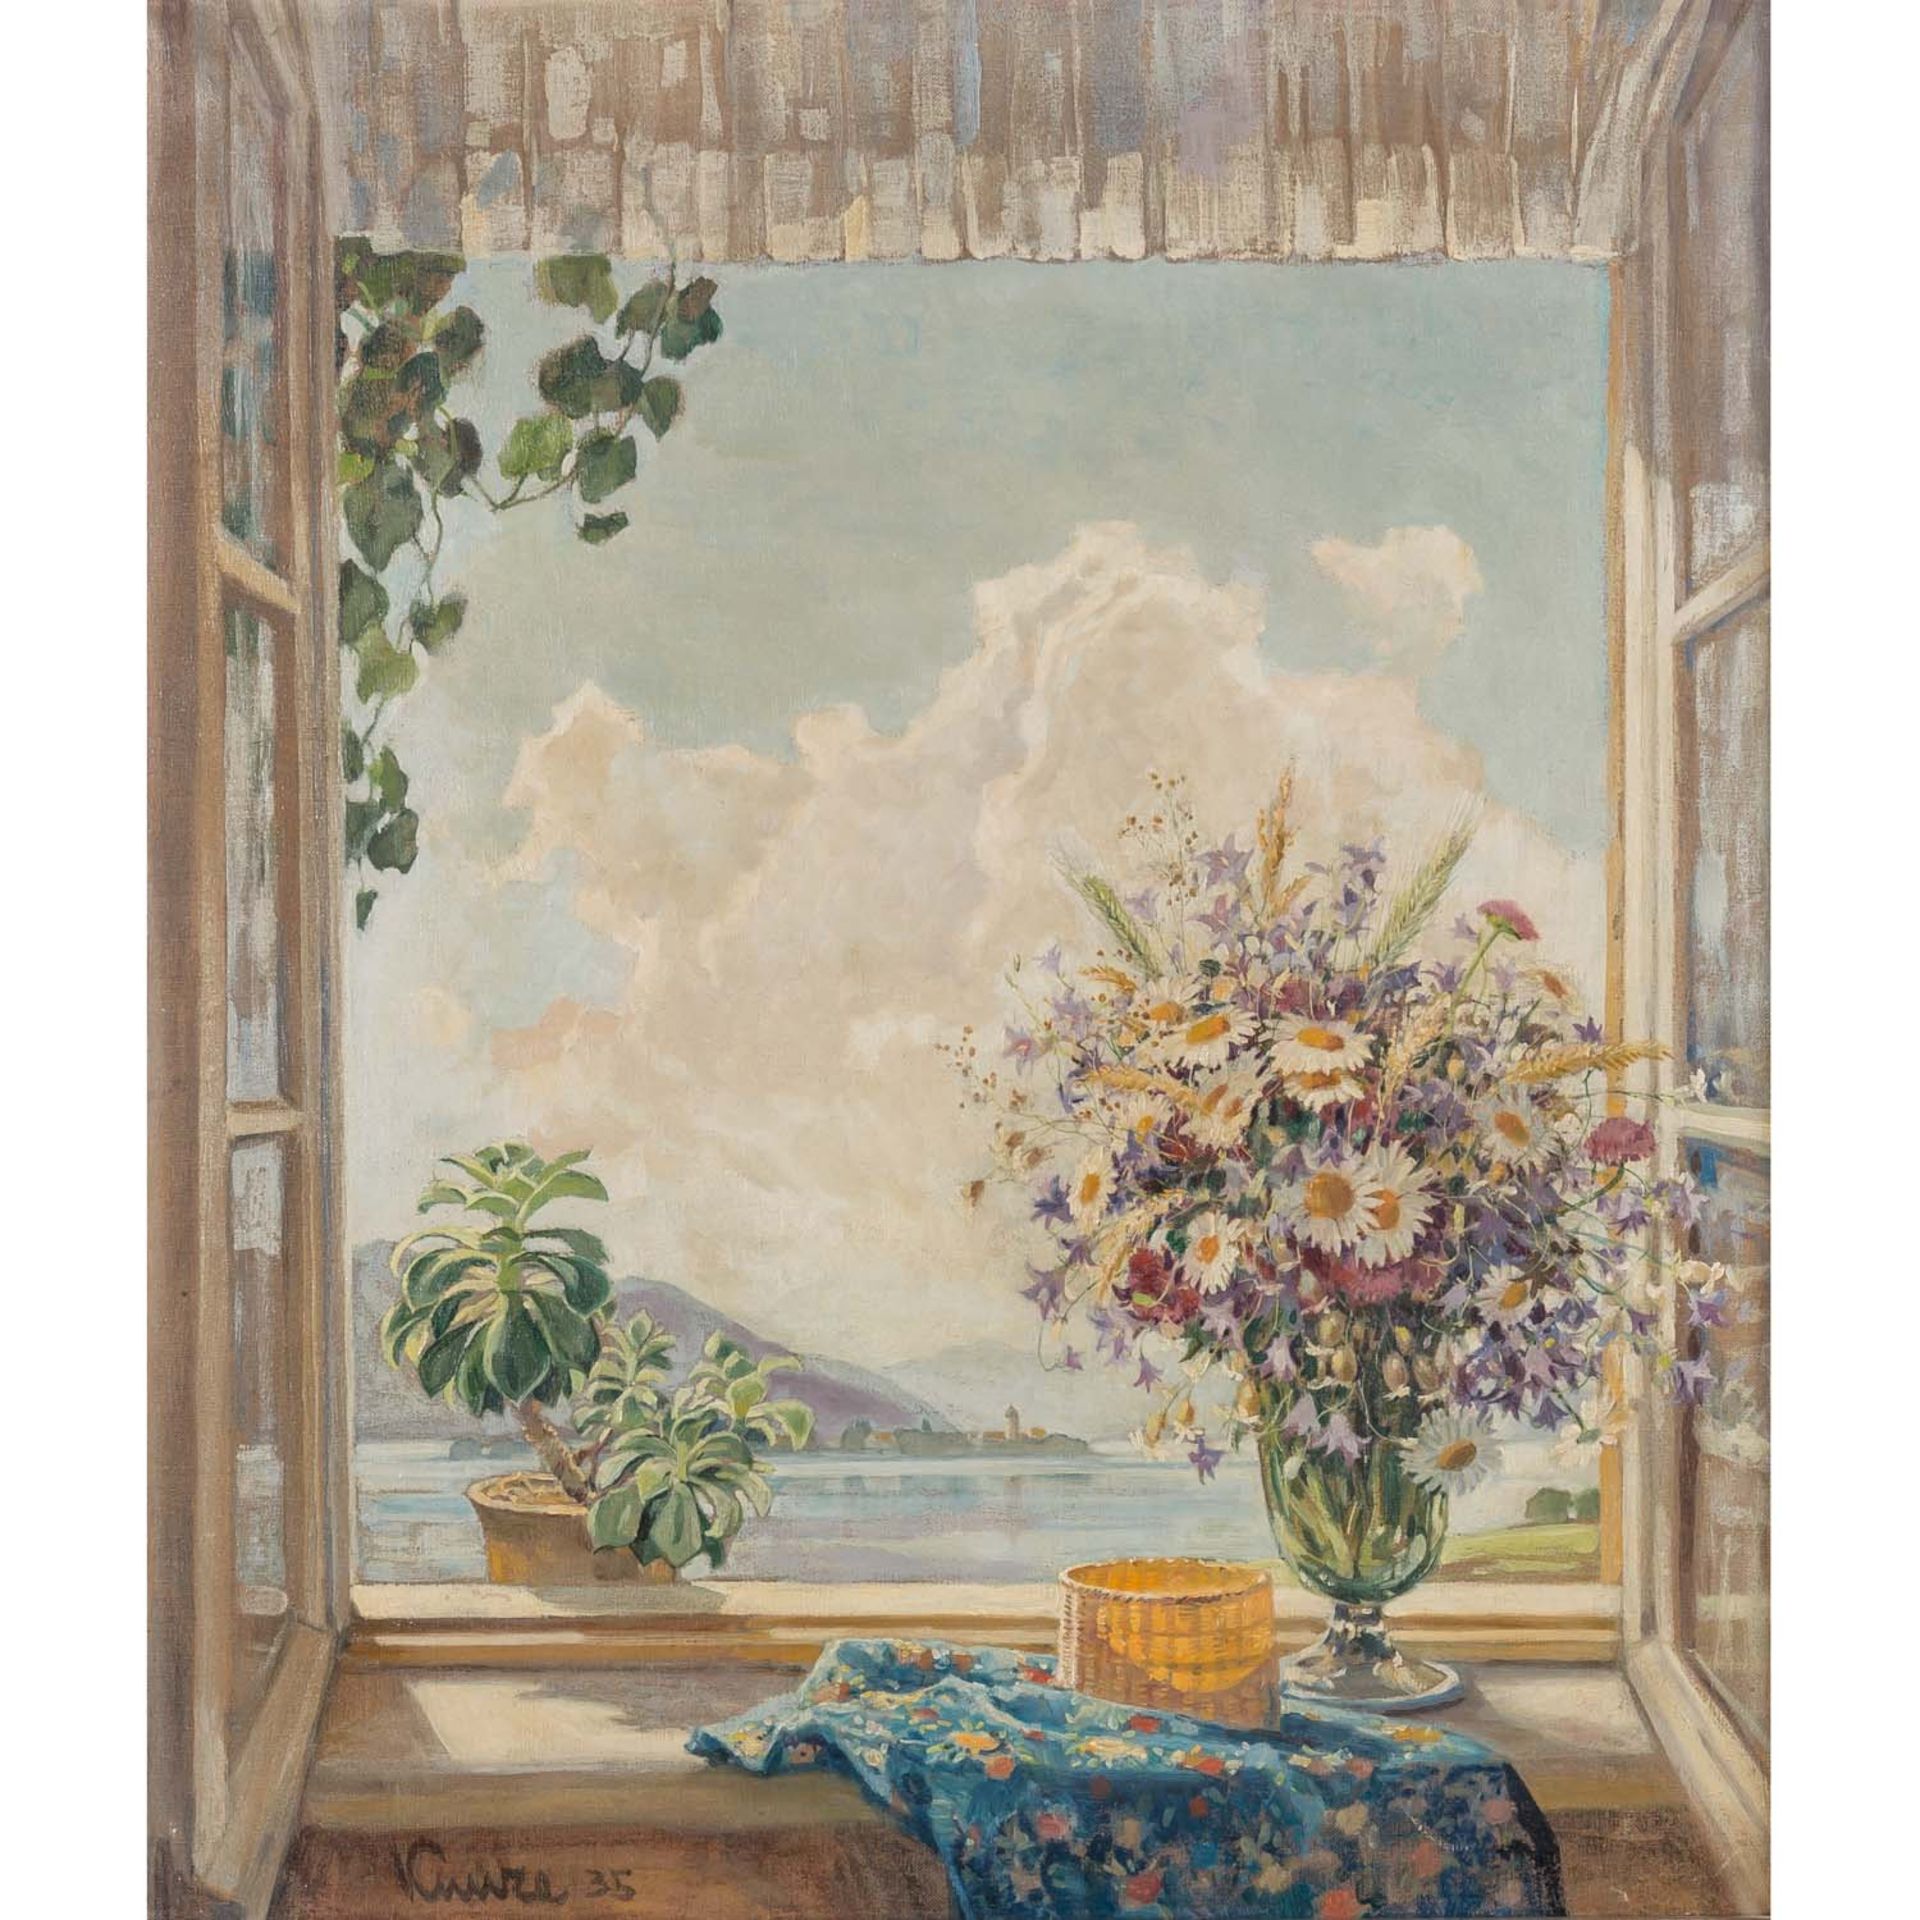 KUNZE, ALFRED (auch Kunze-Chemnitz, 1866-1943), "Blick aus dem Fenster auf den Chiemsee",